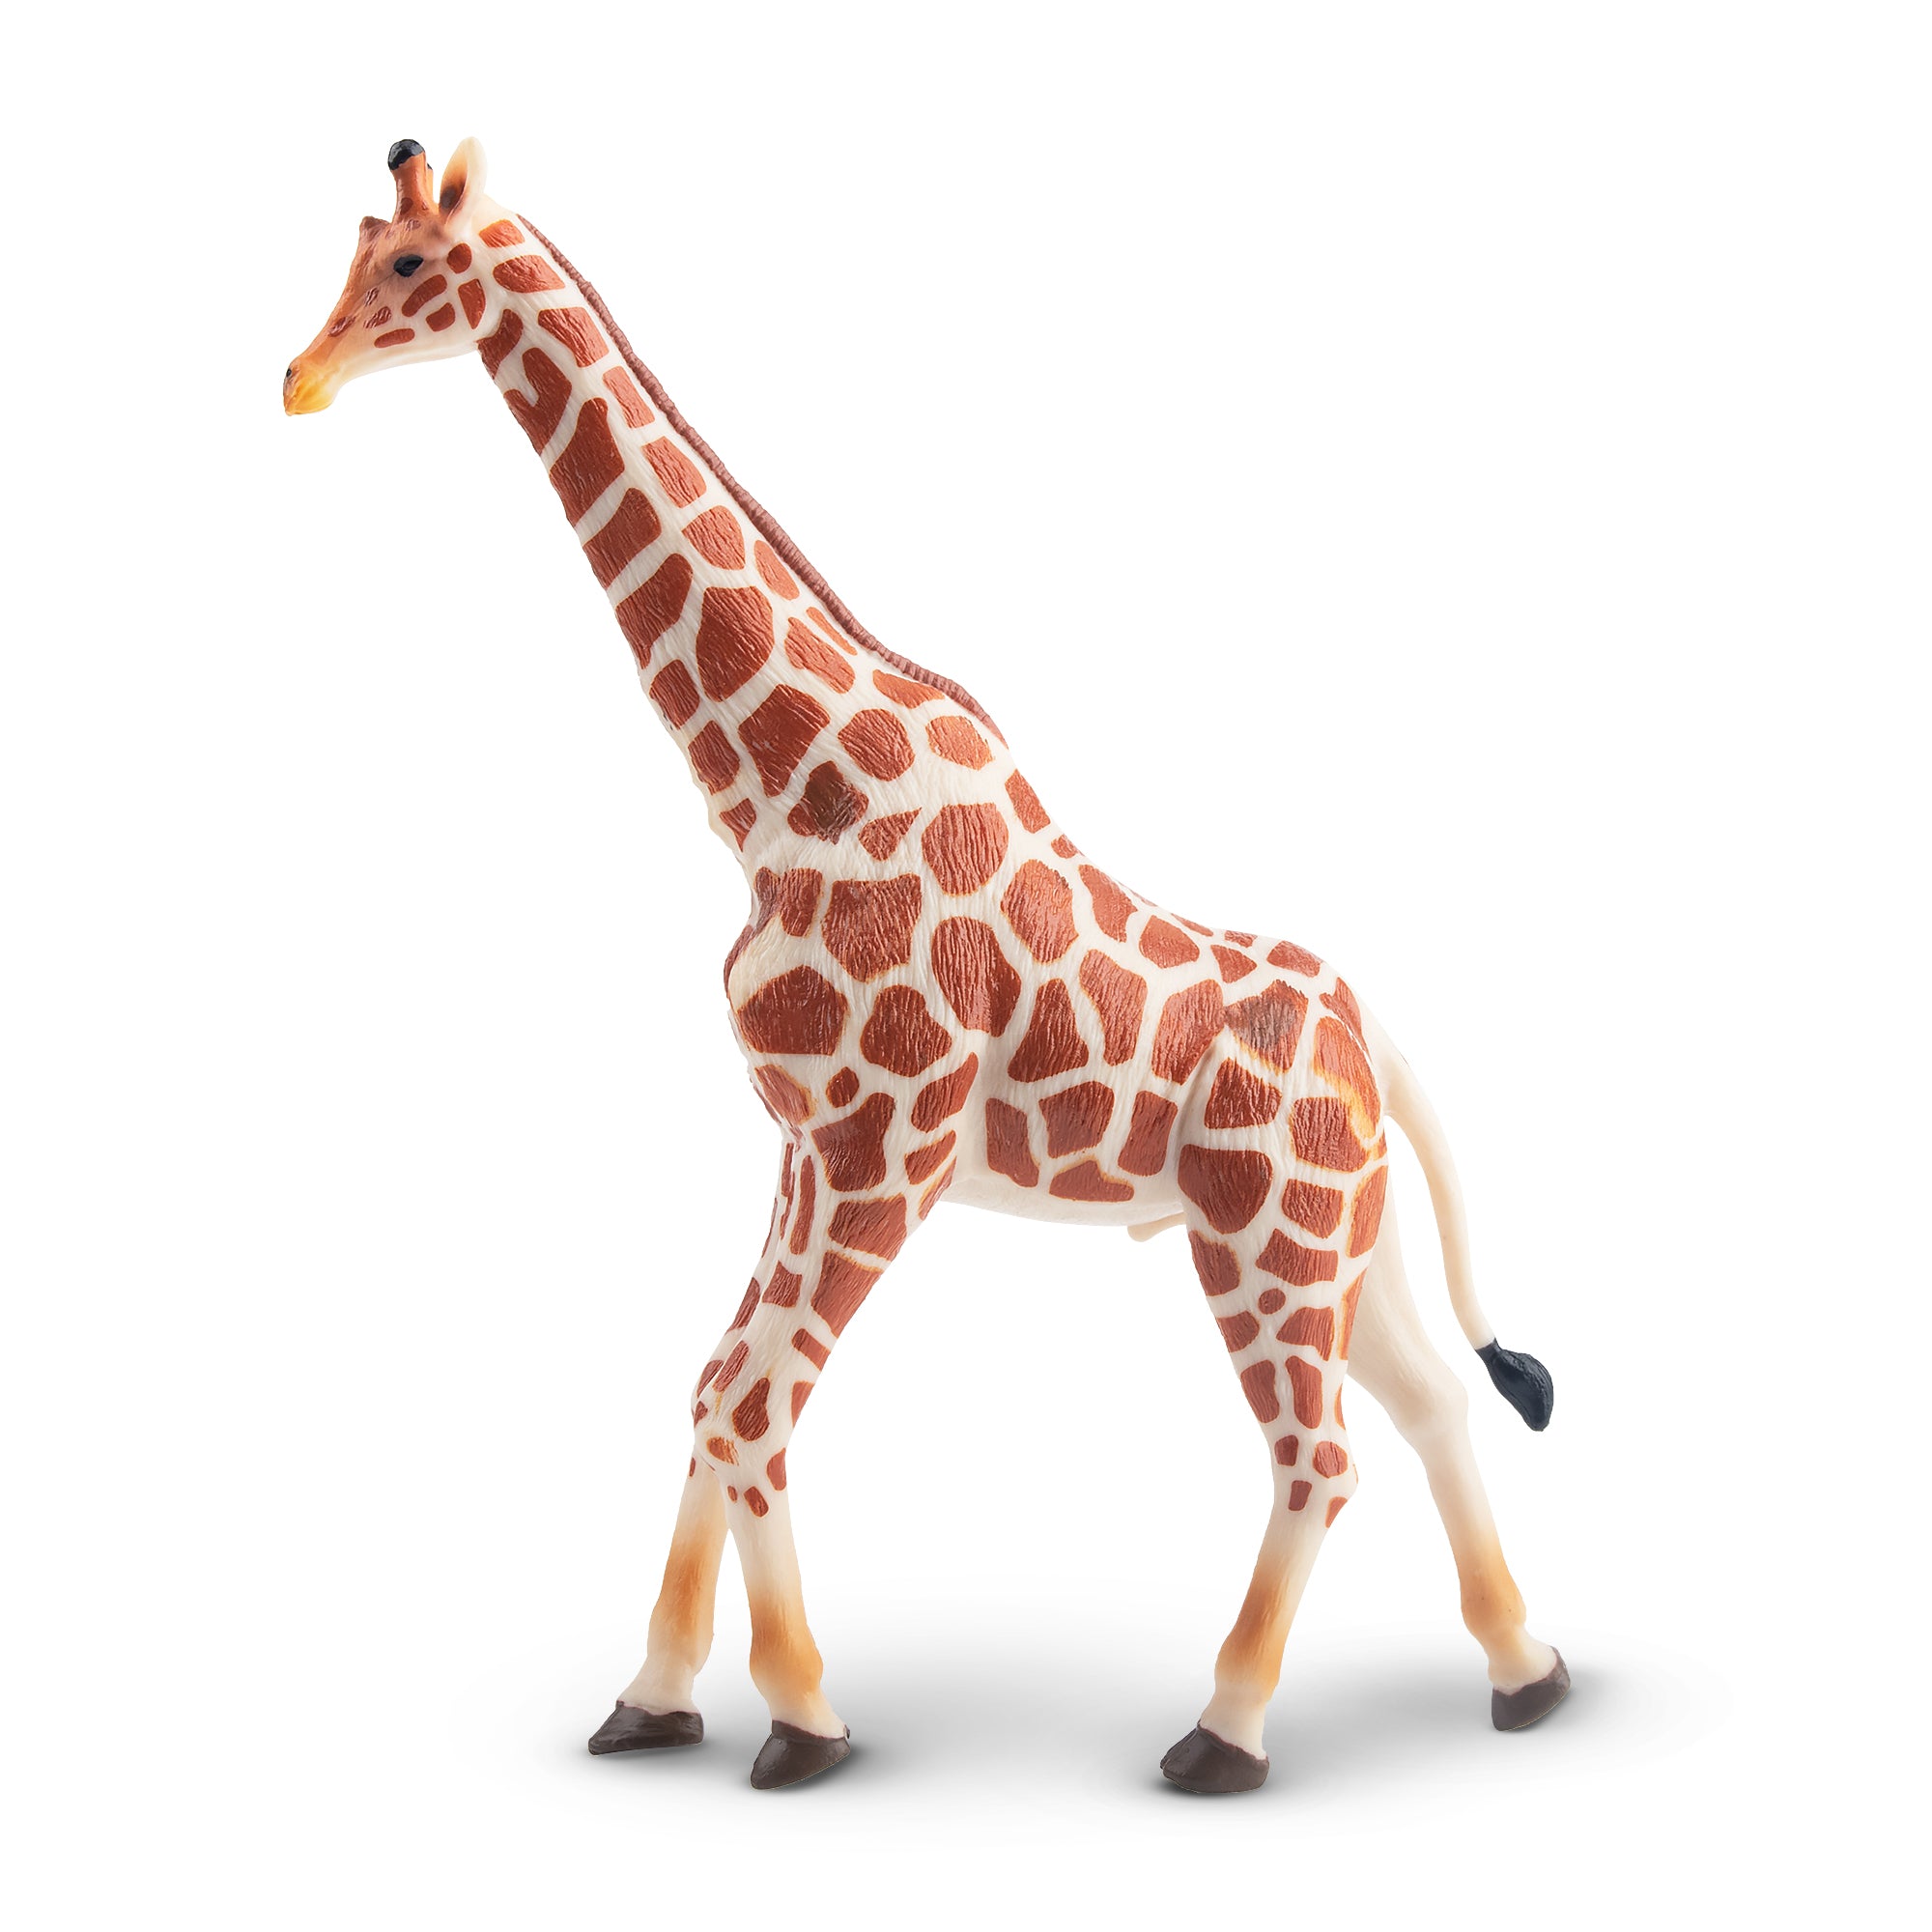 Toymany Giraffe Figurine Toy